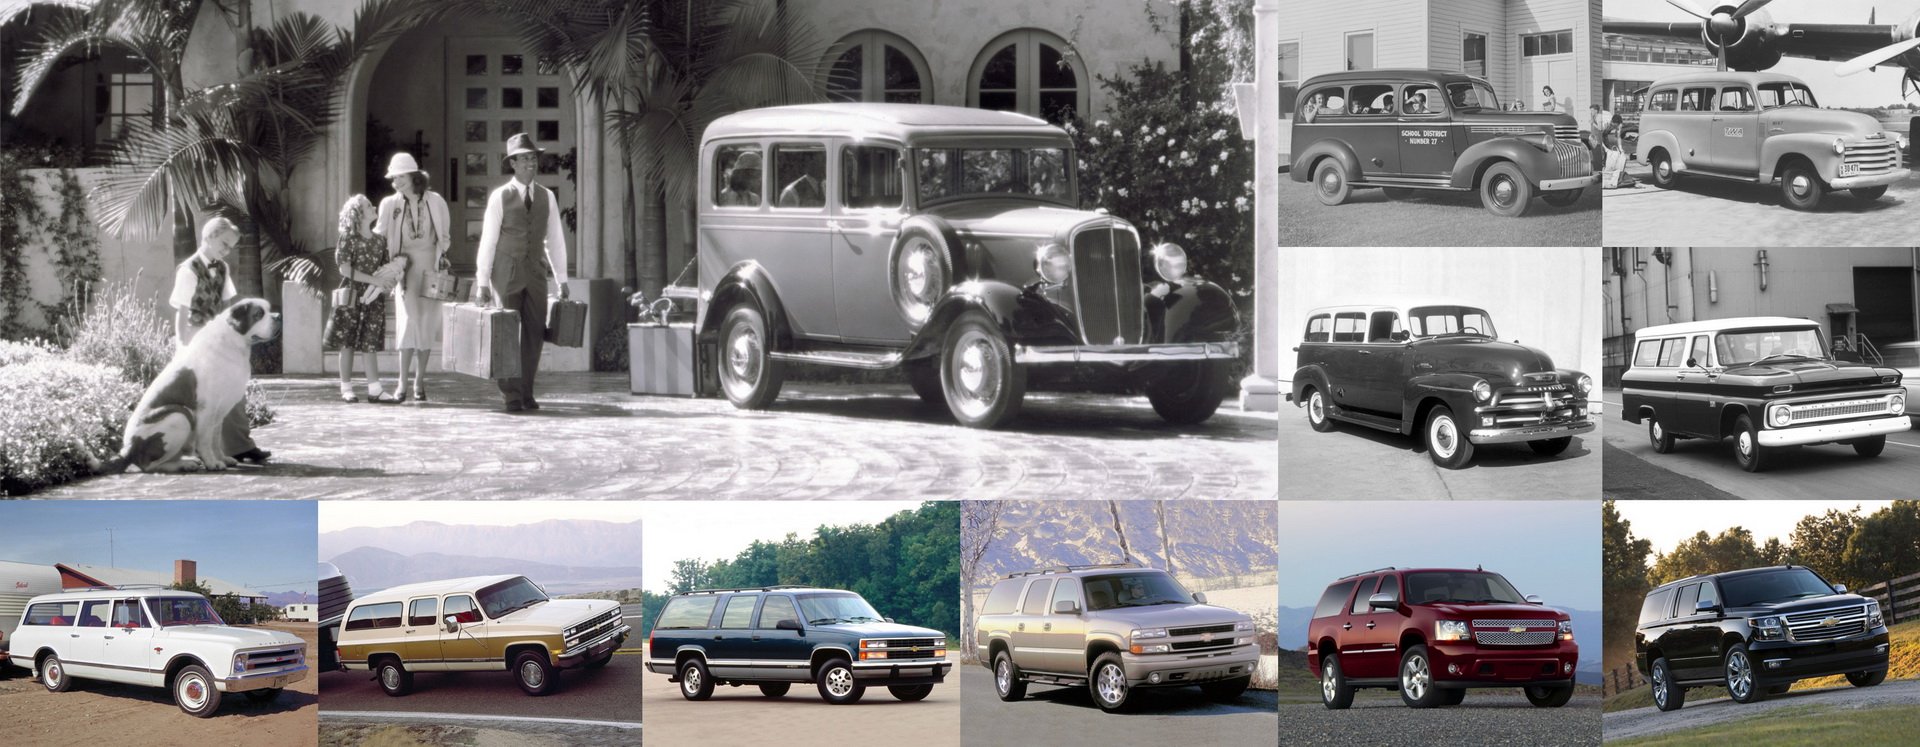 شيفروليه سوبربان تحتفل بمرور 85 عاماً وكونها أقدم موديل في تاريخ السيارات 105